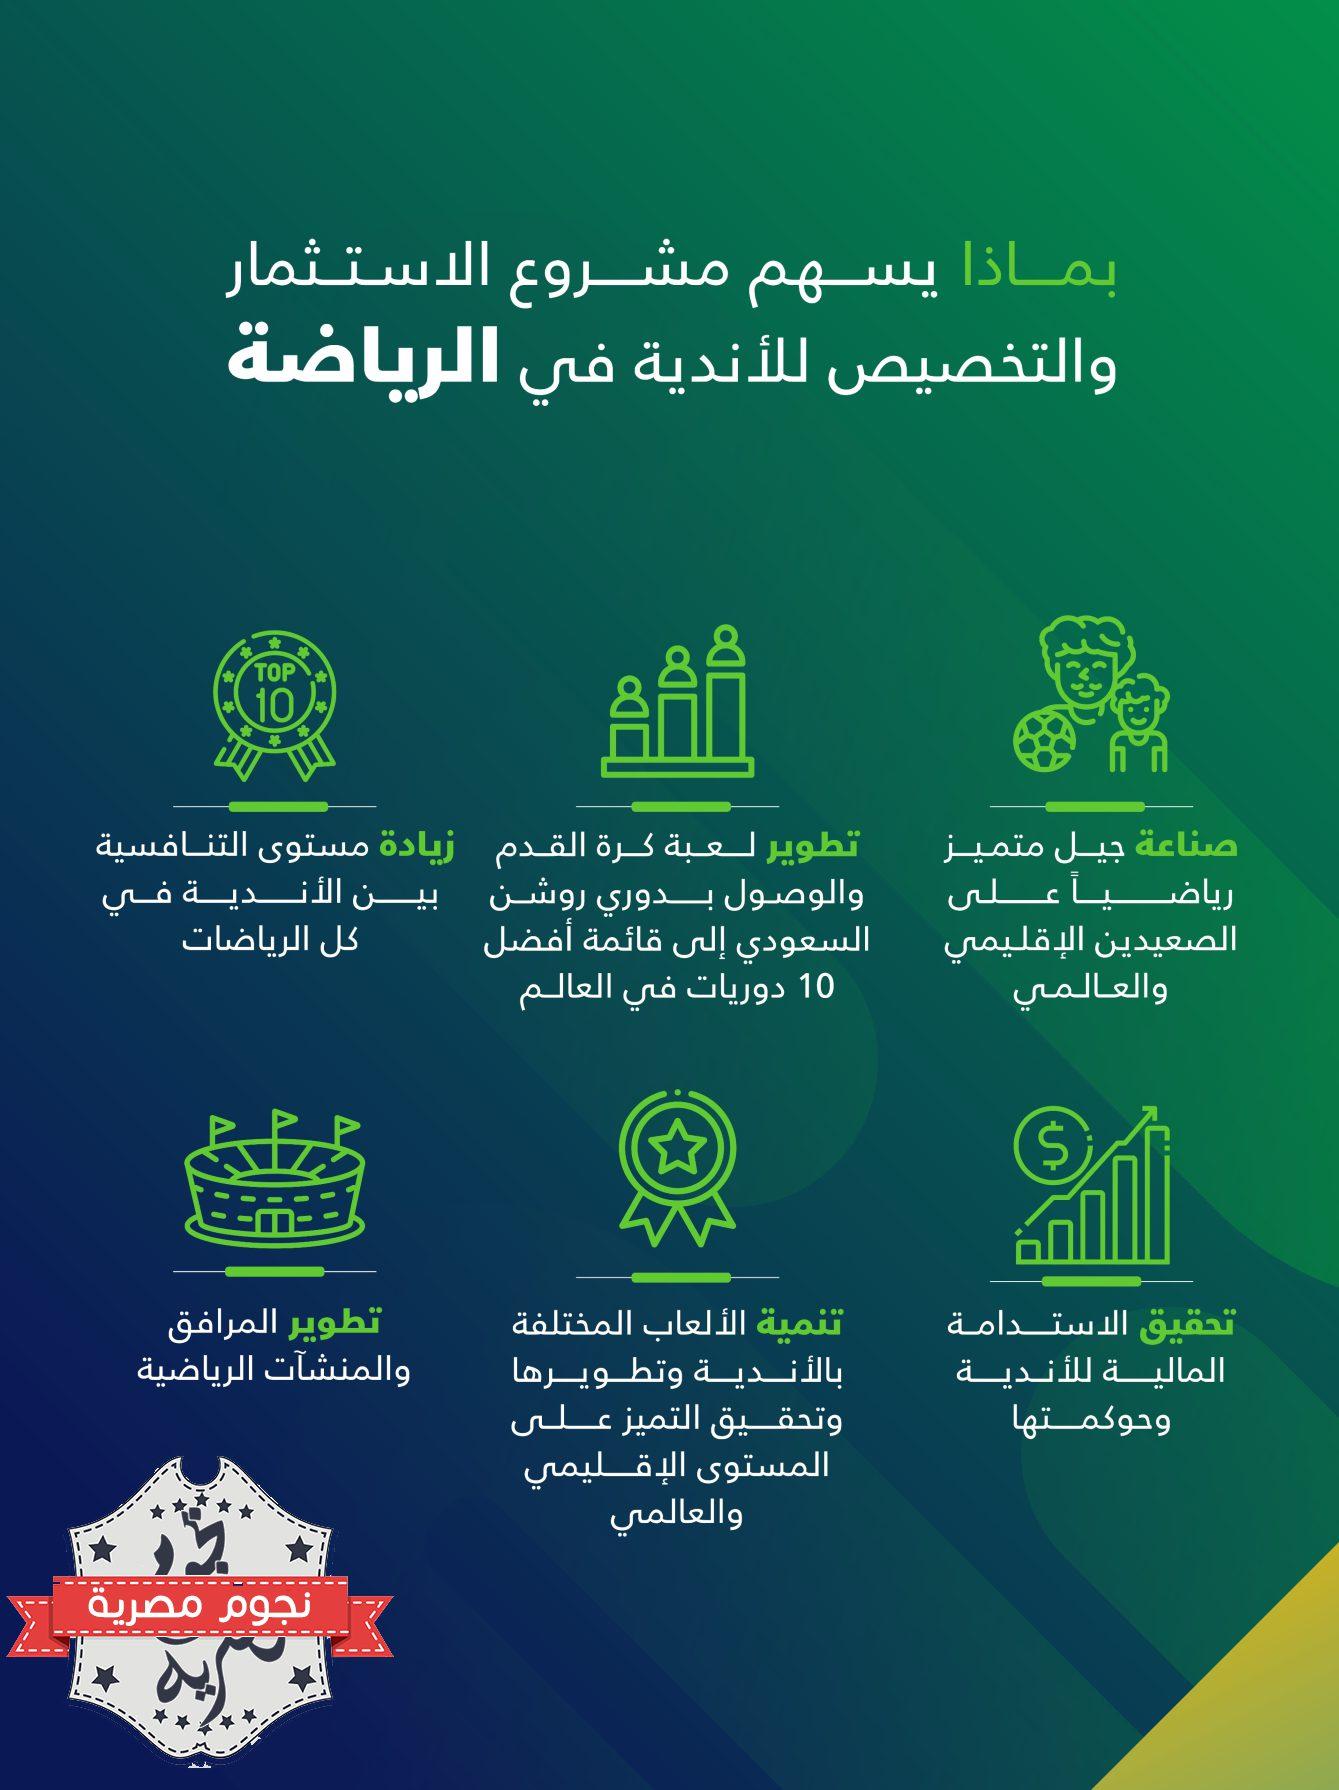 إسهامات المشروع الاستثماري السعودي الجديد في قطاع الرياضة